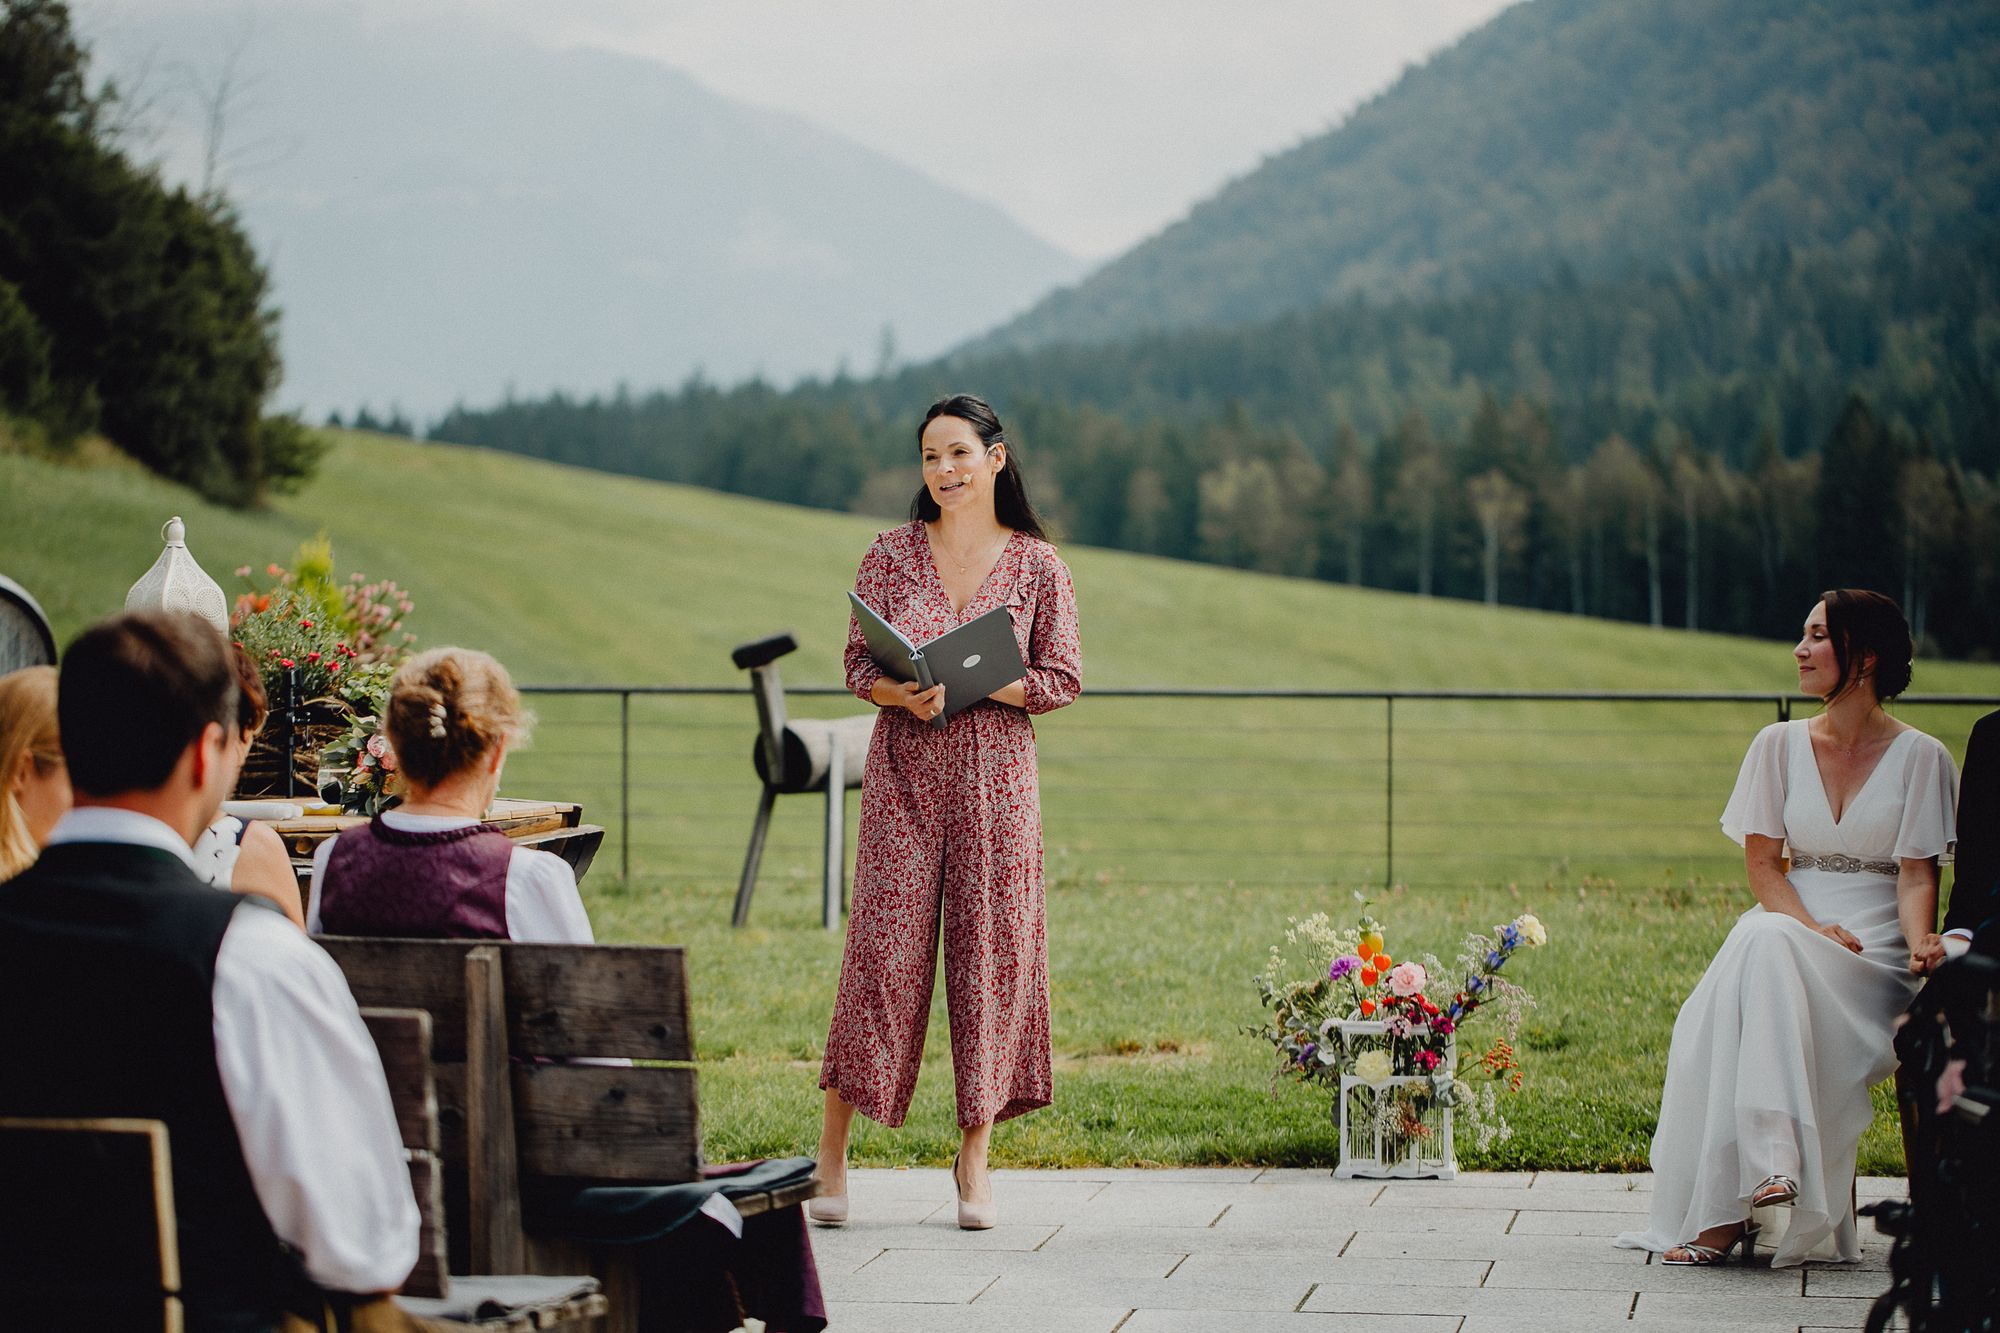 Eine Frau hält eine Rede bei einer Hochzeitszeremonie in den Bergen.